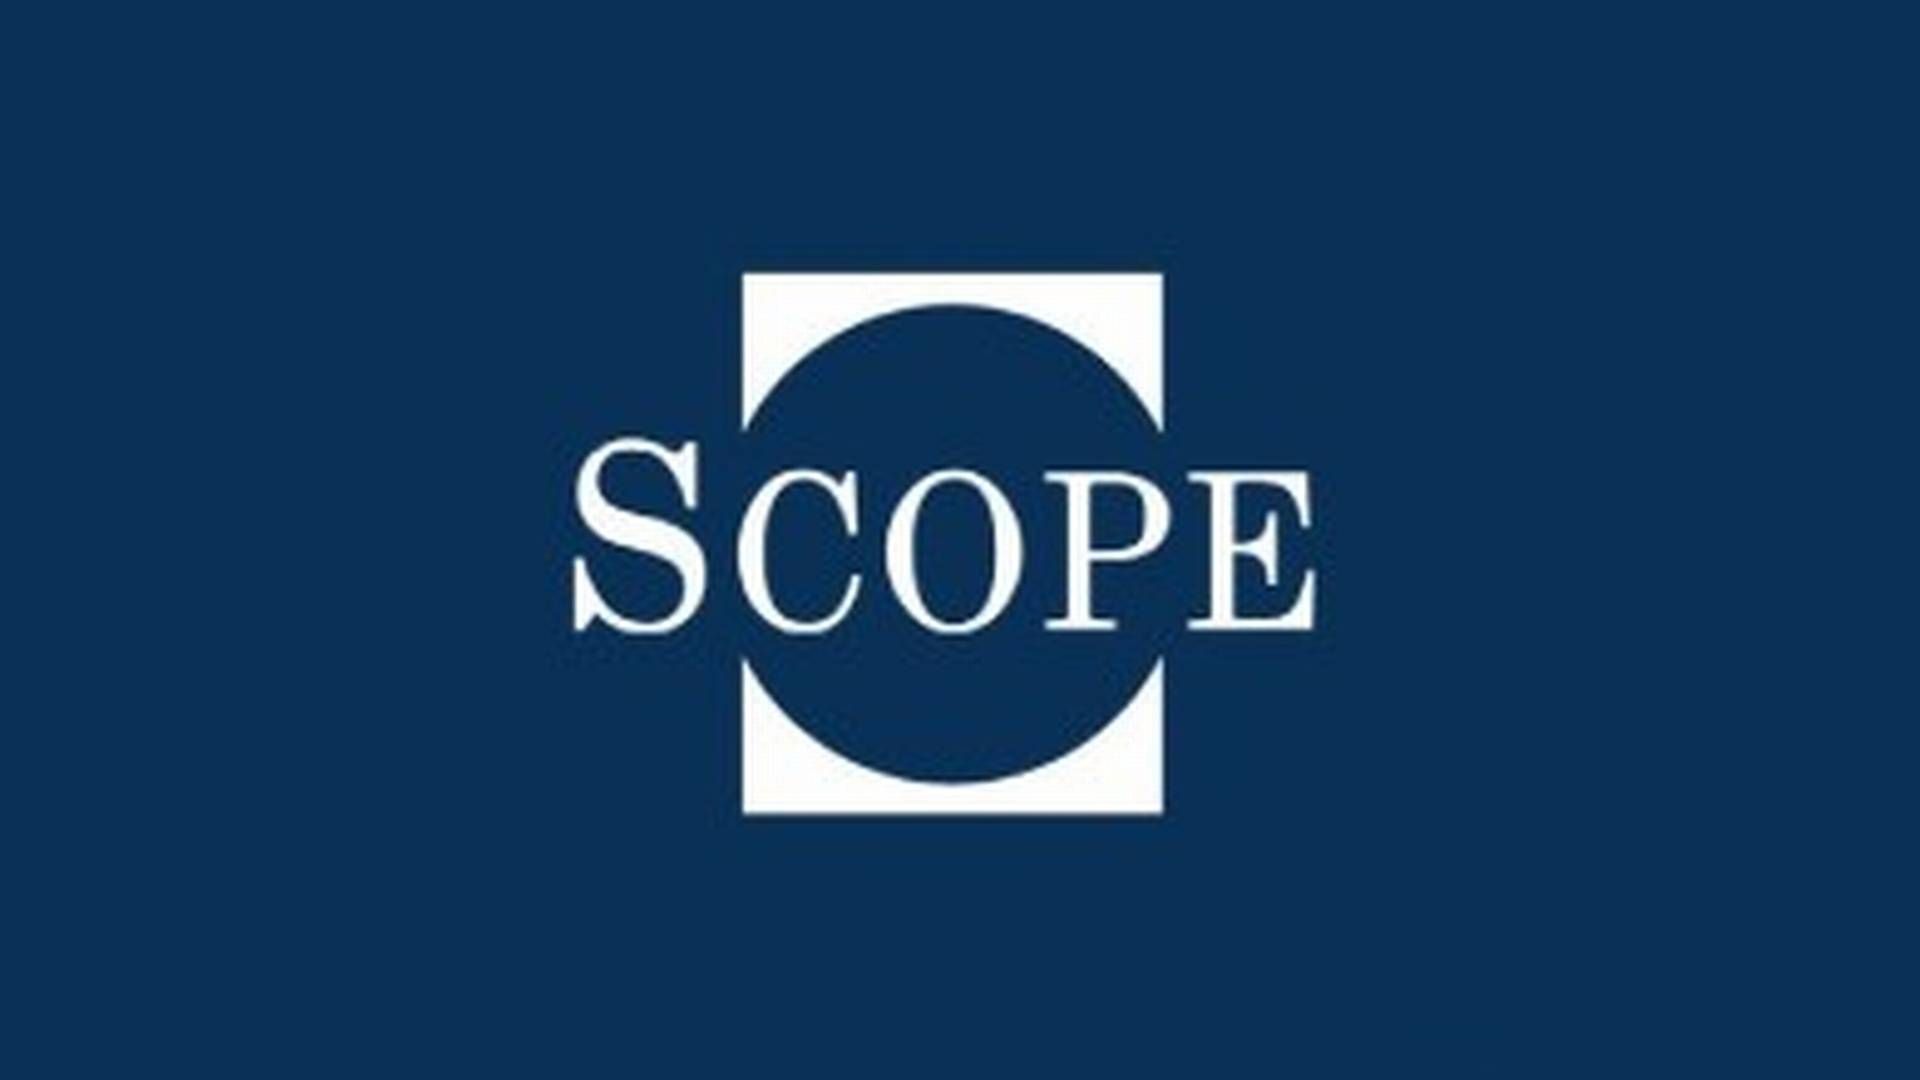 Scope Group gir blant annet ut kredittrating til banker verden over. | Foto: Scope Group